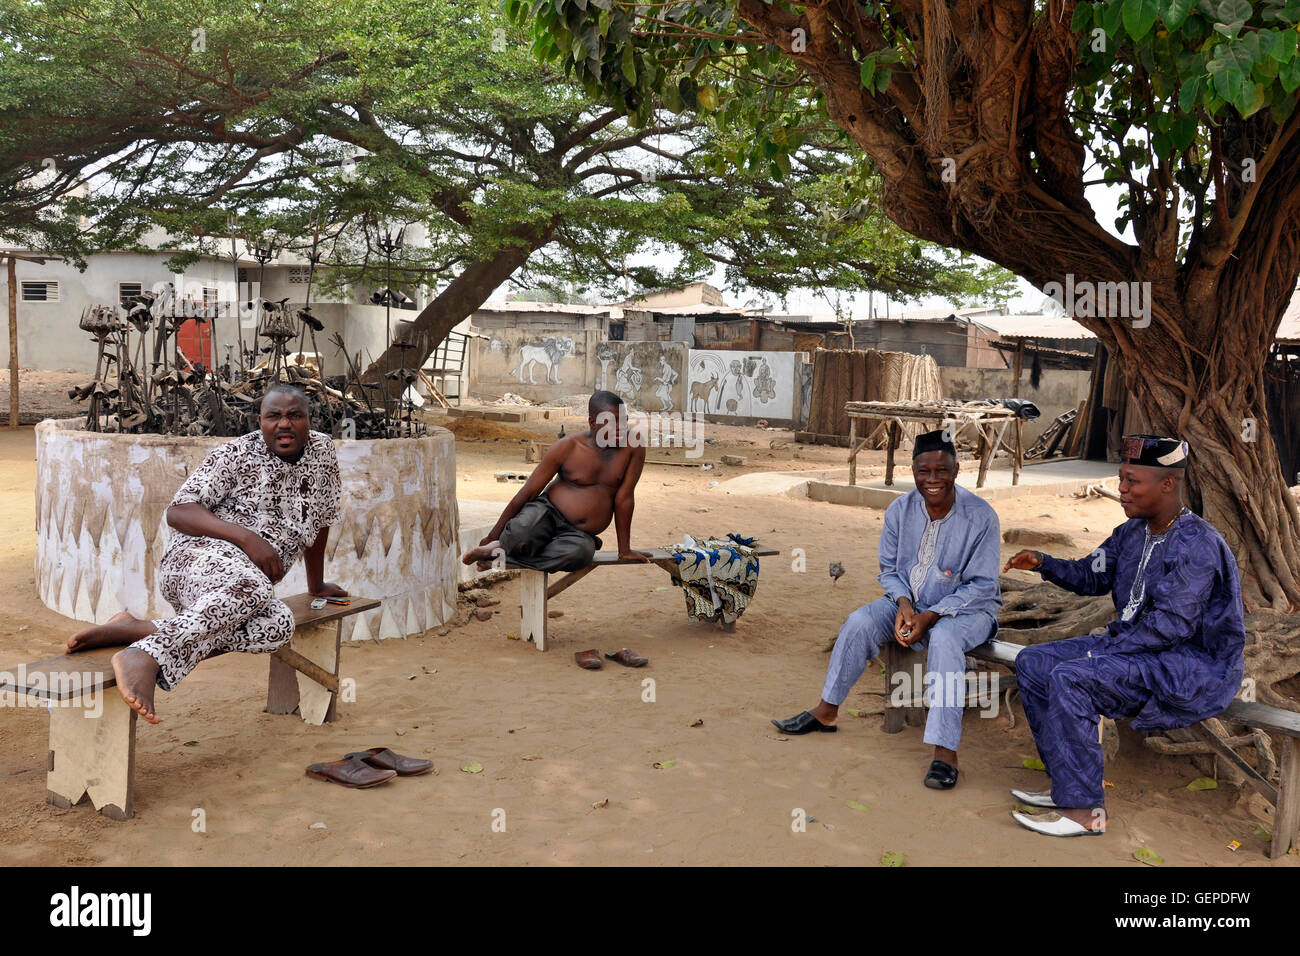 Togo, Lomè, daily life Stock Photo